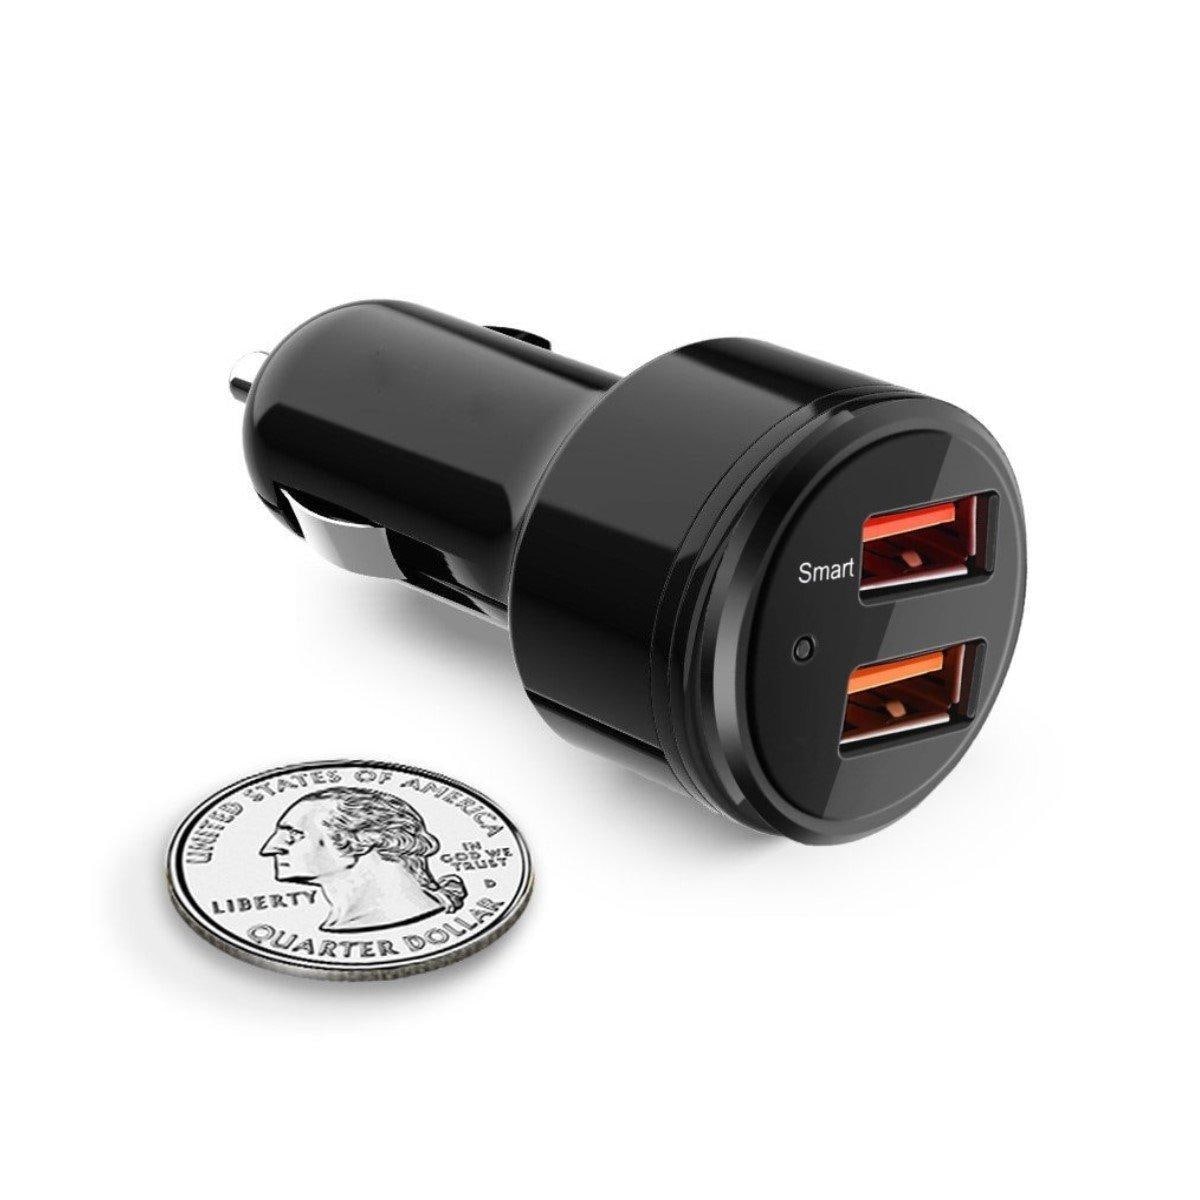 Dobbelt USB-oplader til bilen med Quick Charge 3.0 | Elgiganten